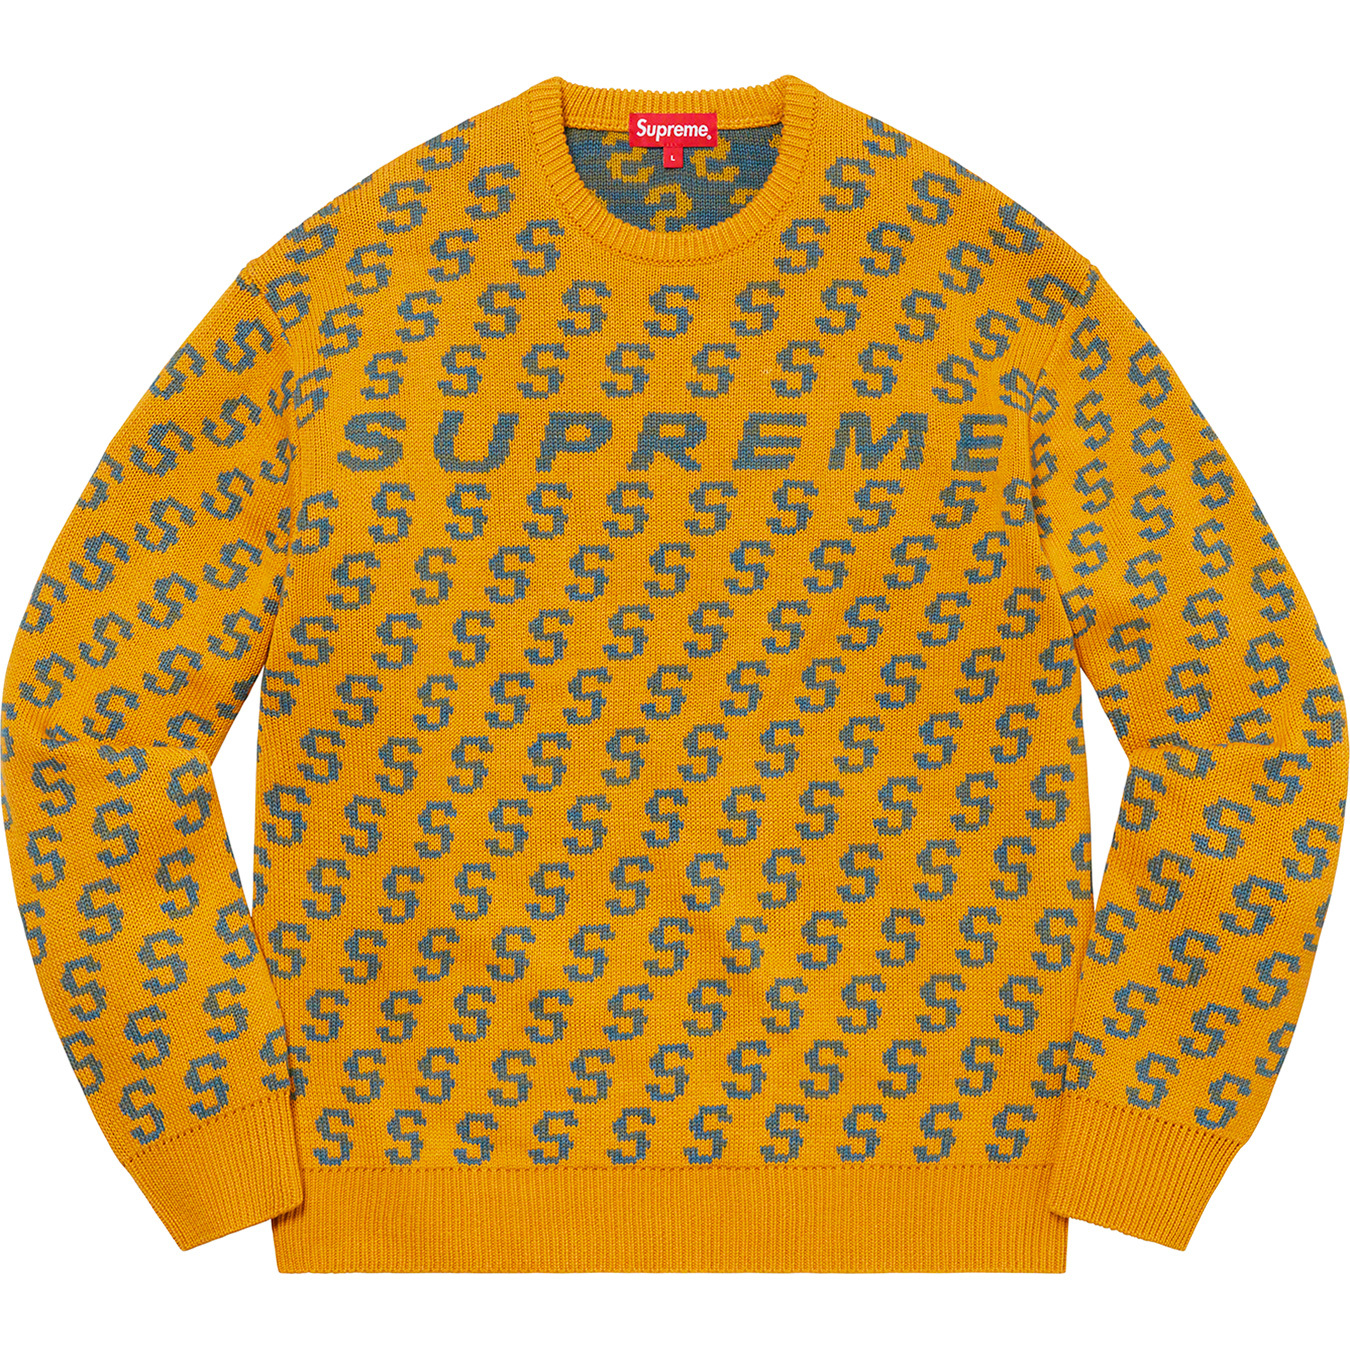 S Repeat Sweater - Supreme